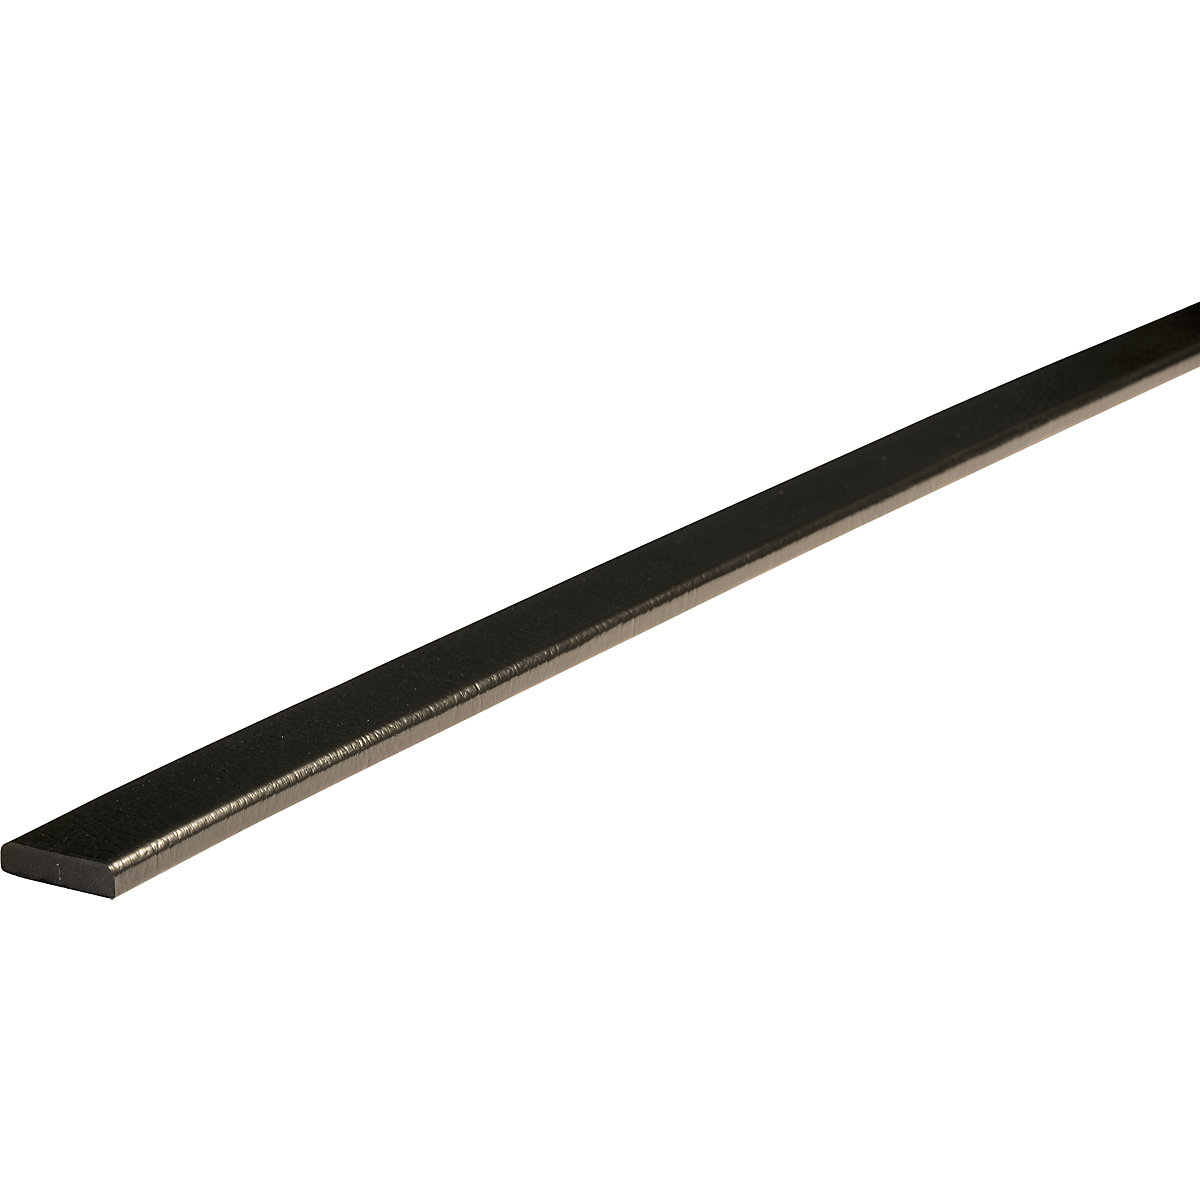 Knuffi® felületvédő – SHG, F-típus, újrafelhasználható, 1 m-es darab, fekete-19